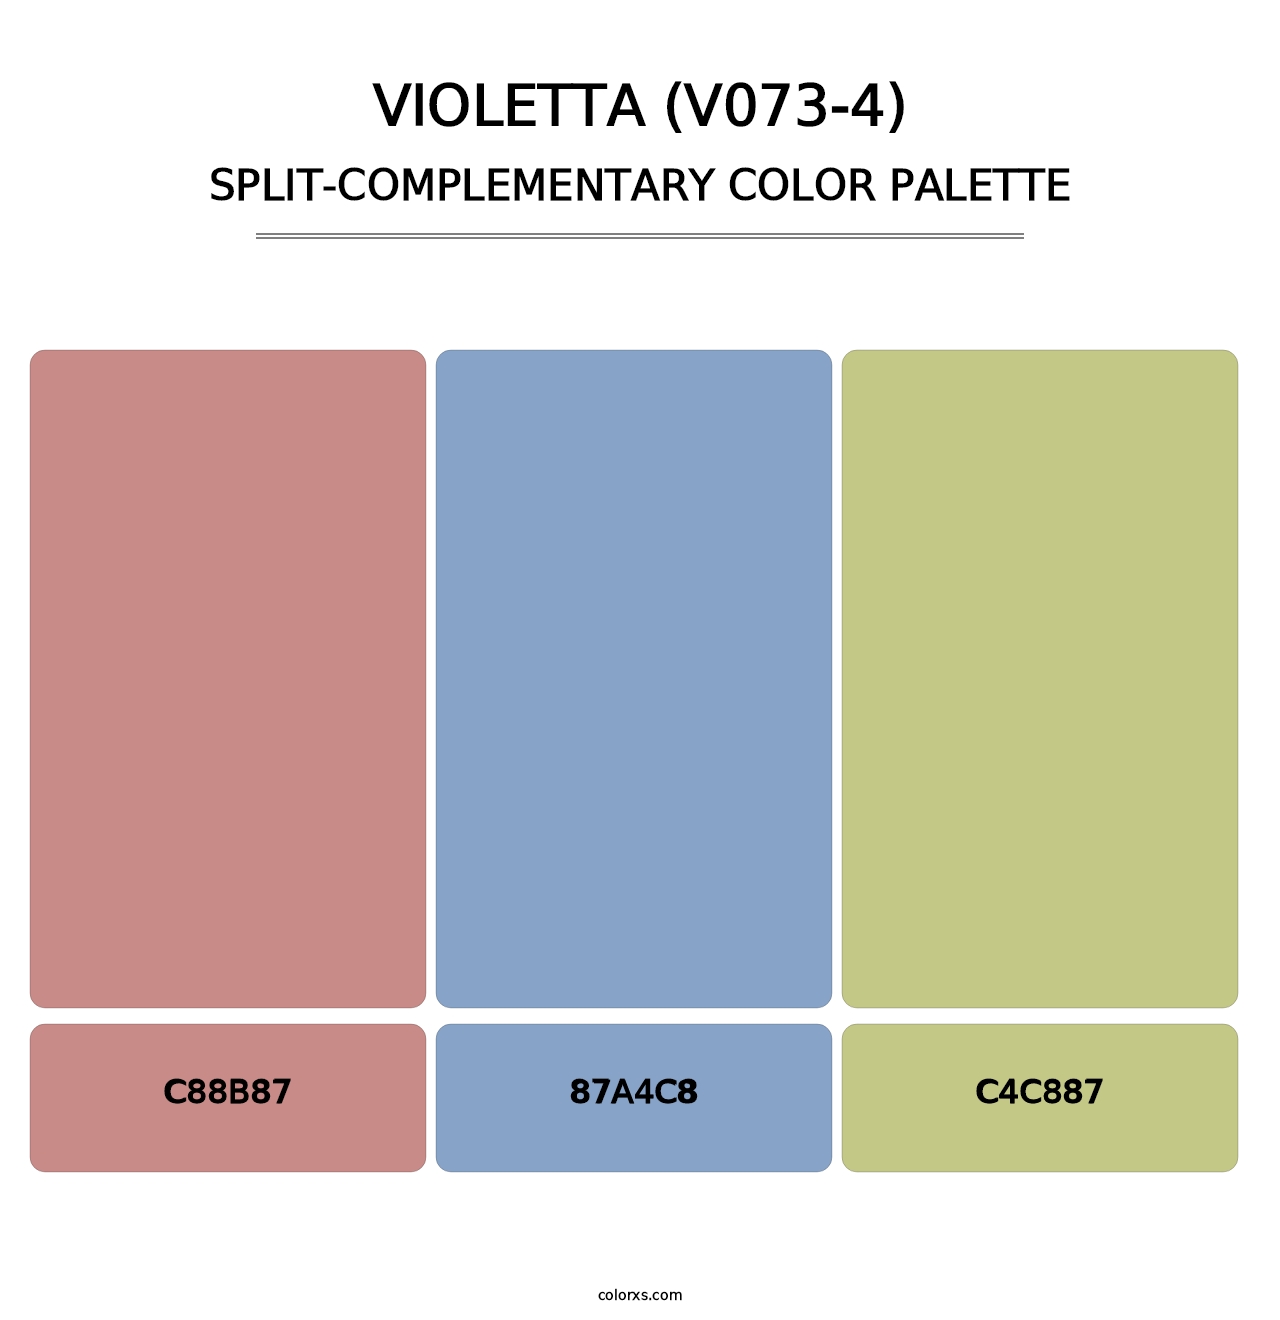 Violetta (V073-4) - Split-Complementary Color Palette